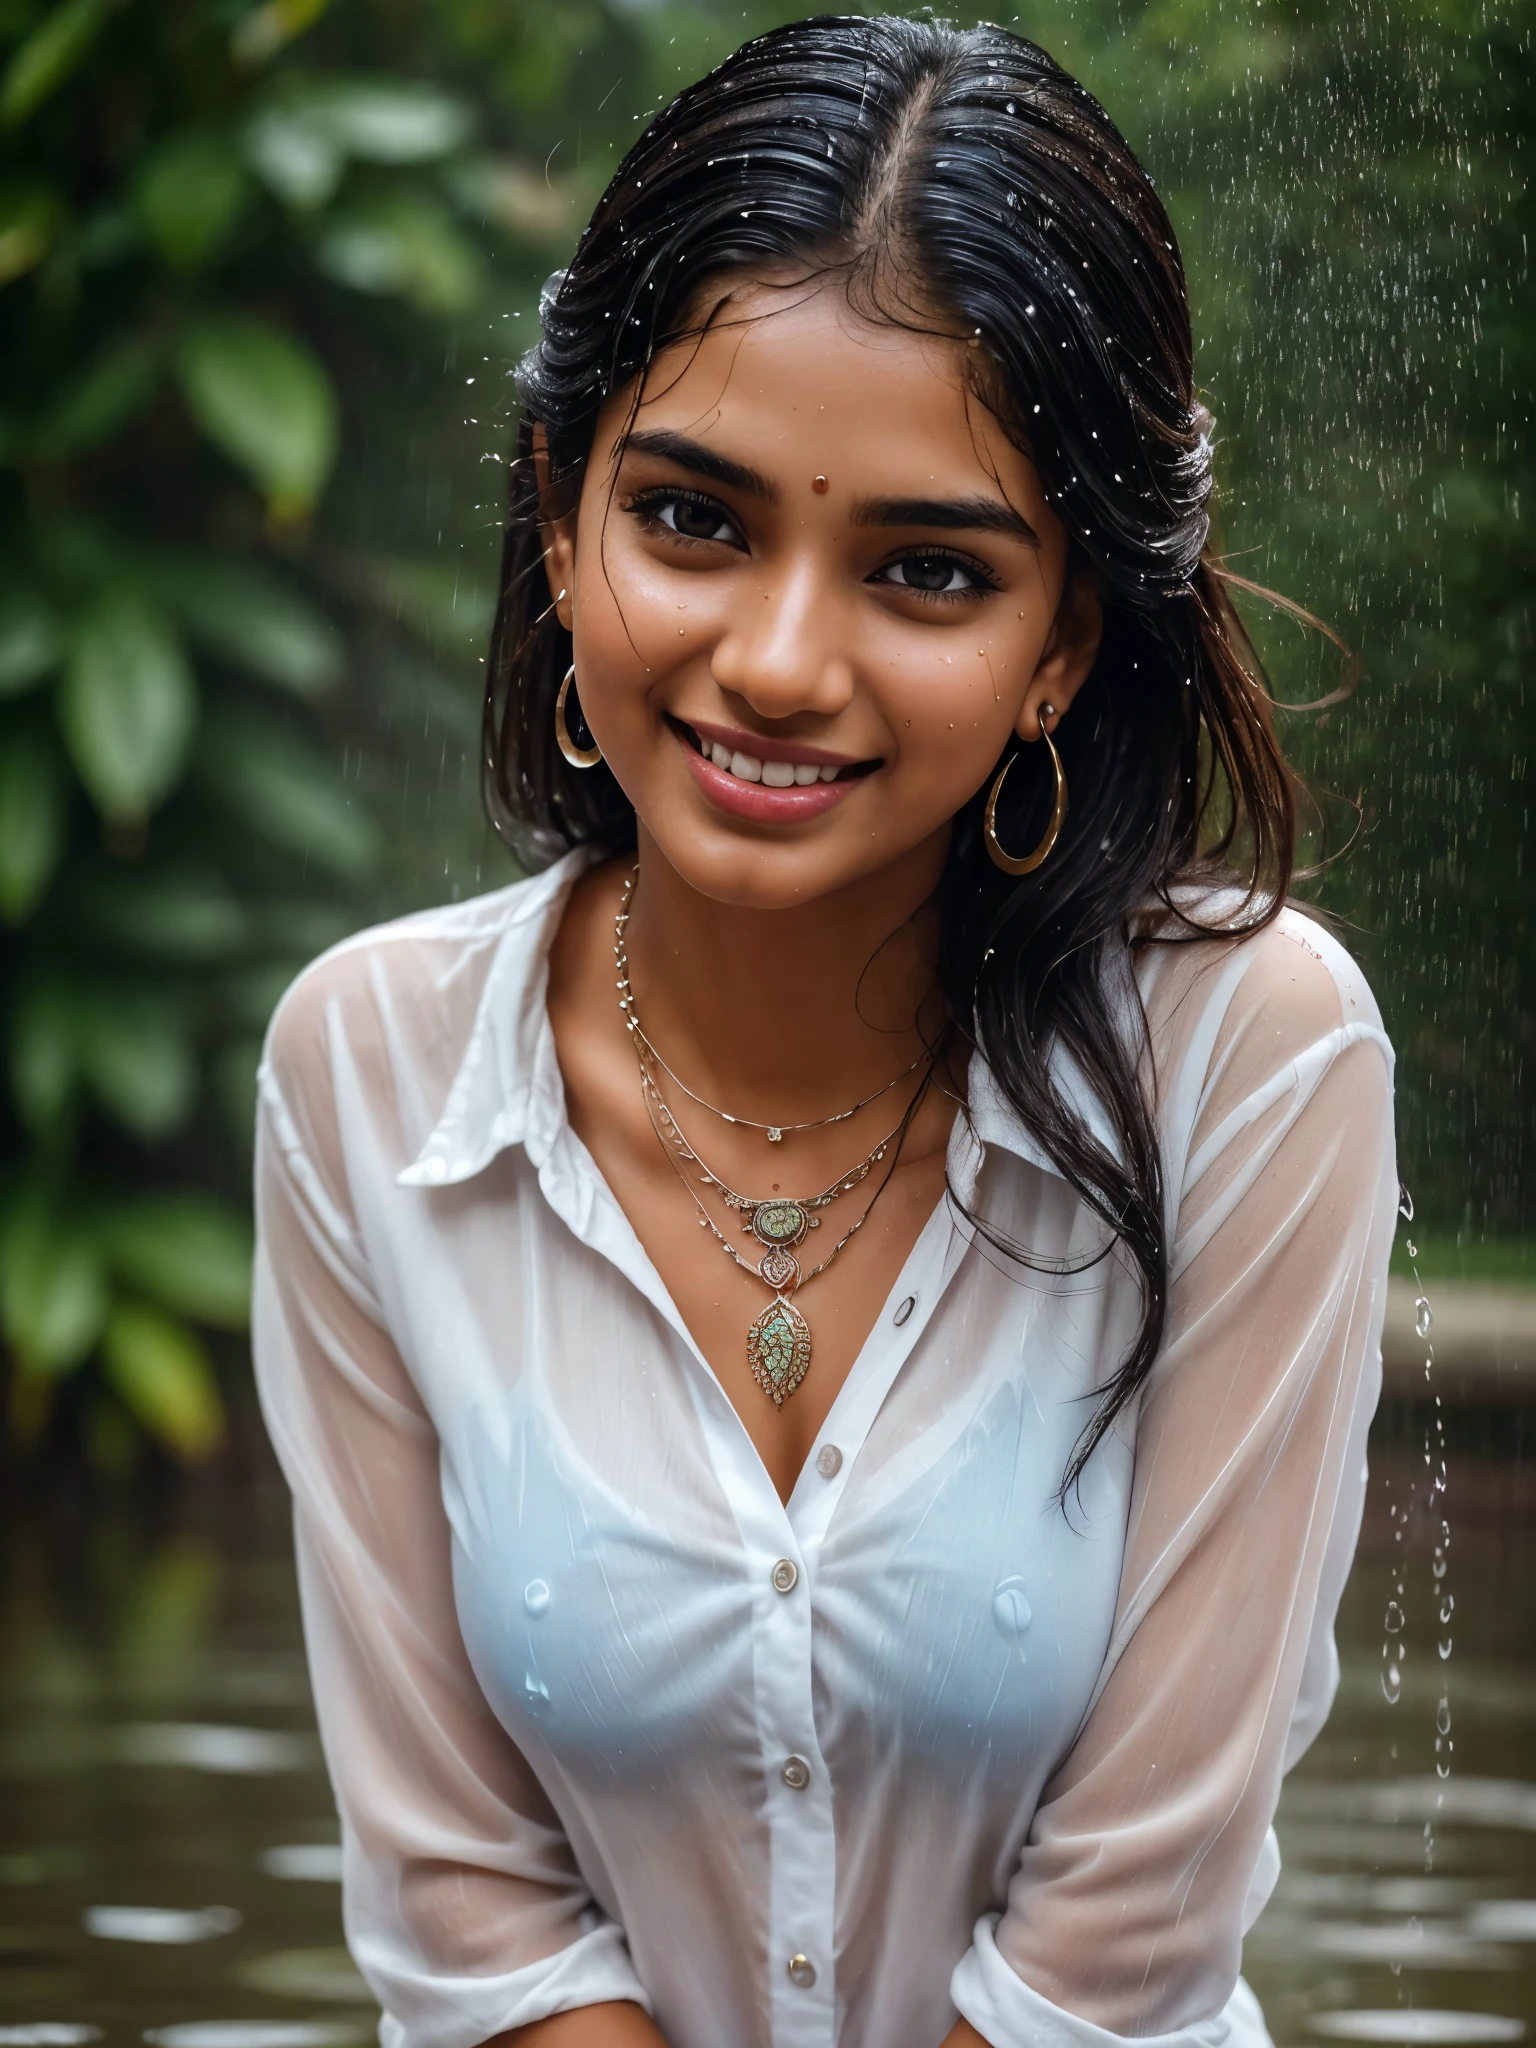 20 yหู old extremely beautiful brown Tamil girl (เสื้อเชิ้ตสีขาวกางเกงยีนส์สีน้ำเงิน), (กำไล ต่างหู สร้อยคอ นาฬิกาข้อมือ), เพลิดเพลินกับสายฝน, เปียกโชกไปด้วยสายฝน, หันหน้าไปทางผู้ชมหันหน้าไปทางกล้อง, ดวงตา symmetry, ใบหน้าสมมาตร, (คุณภาพดีที่สุด, มีรายละเอียดมาก:1.6), ฉากที่มีสีสัน, จานสีสดใส, บรรยากาศที่สนุกสนาน, สีสันสดใส, การแสดงออกที่น่ารัก, เสียงหัวเราะที่สนุกสนาน, ภาพสะท้อนของน้ำฝน, ผมเปียก, เสื้อผ้าเปียก, ร่างกายเปียก, ร่างกายสะท้อนแสง, ย้อนแสง, บรรยากาศสดชื่น, ใบหน้ามีความสุข, สาดน้ำ, หยาดฝนที่ตกลงมารอบตัวเธอ, แสงธรรมชาติ, ช่วงเวลาที่ตรงไปตรงมาที่บันทึกไว้, อารมณ์ที่มีชีวิตชีวา, ยืนอยู่ในระยะไกล, (รายละเอียดที่ซับซ้อน:1.6 ใบหน้า & ดวงตา & หู & จมูก & ริมฝีปาก & ผิว & 5 นิ้ว & เส้นโค้ง & ส่วนของร่างกาย)